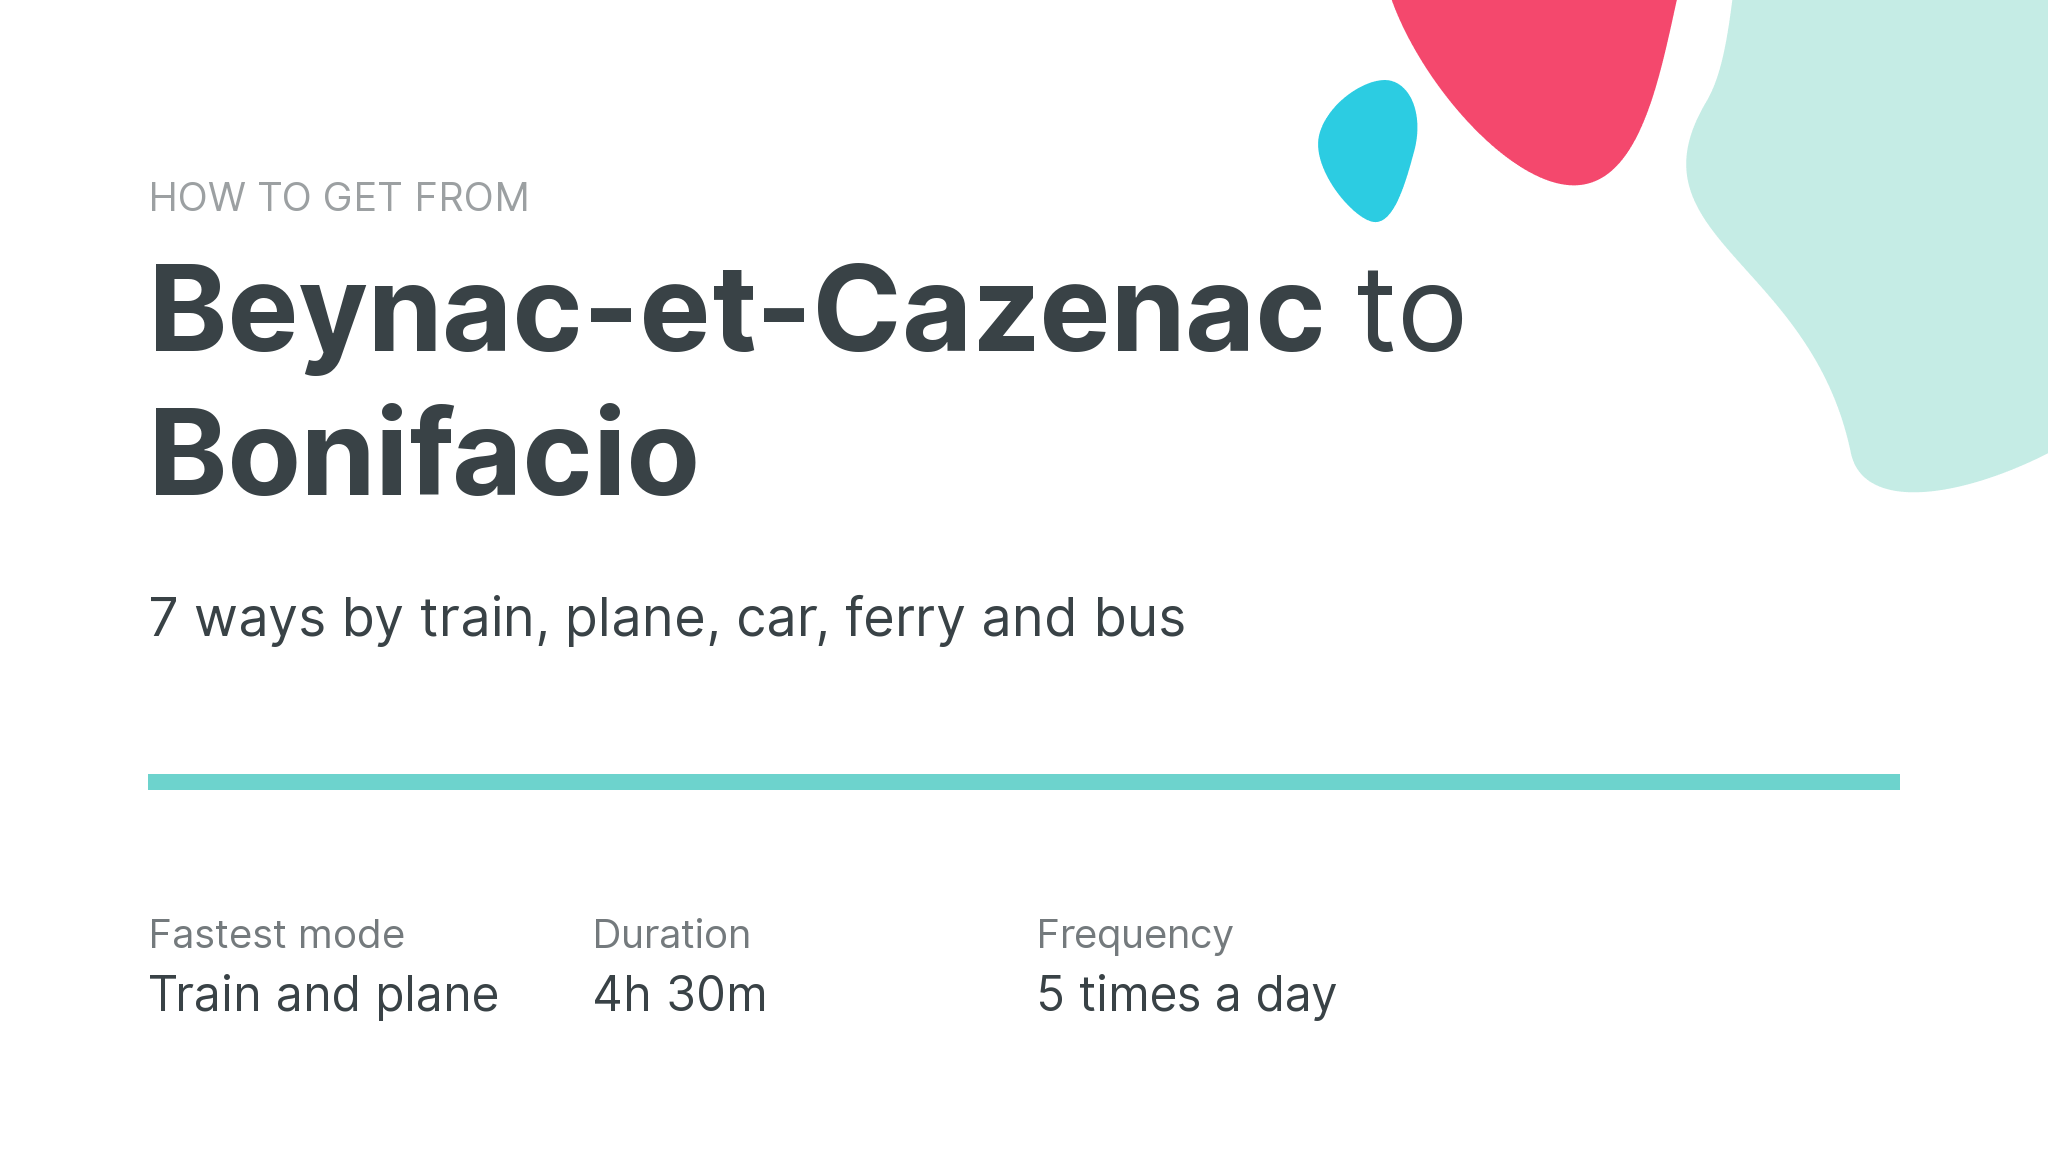 How do I get from Beynac-et-Cazenac to Bonifacio